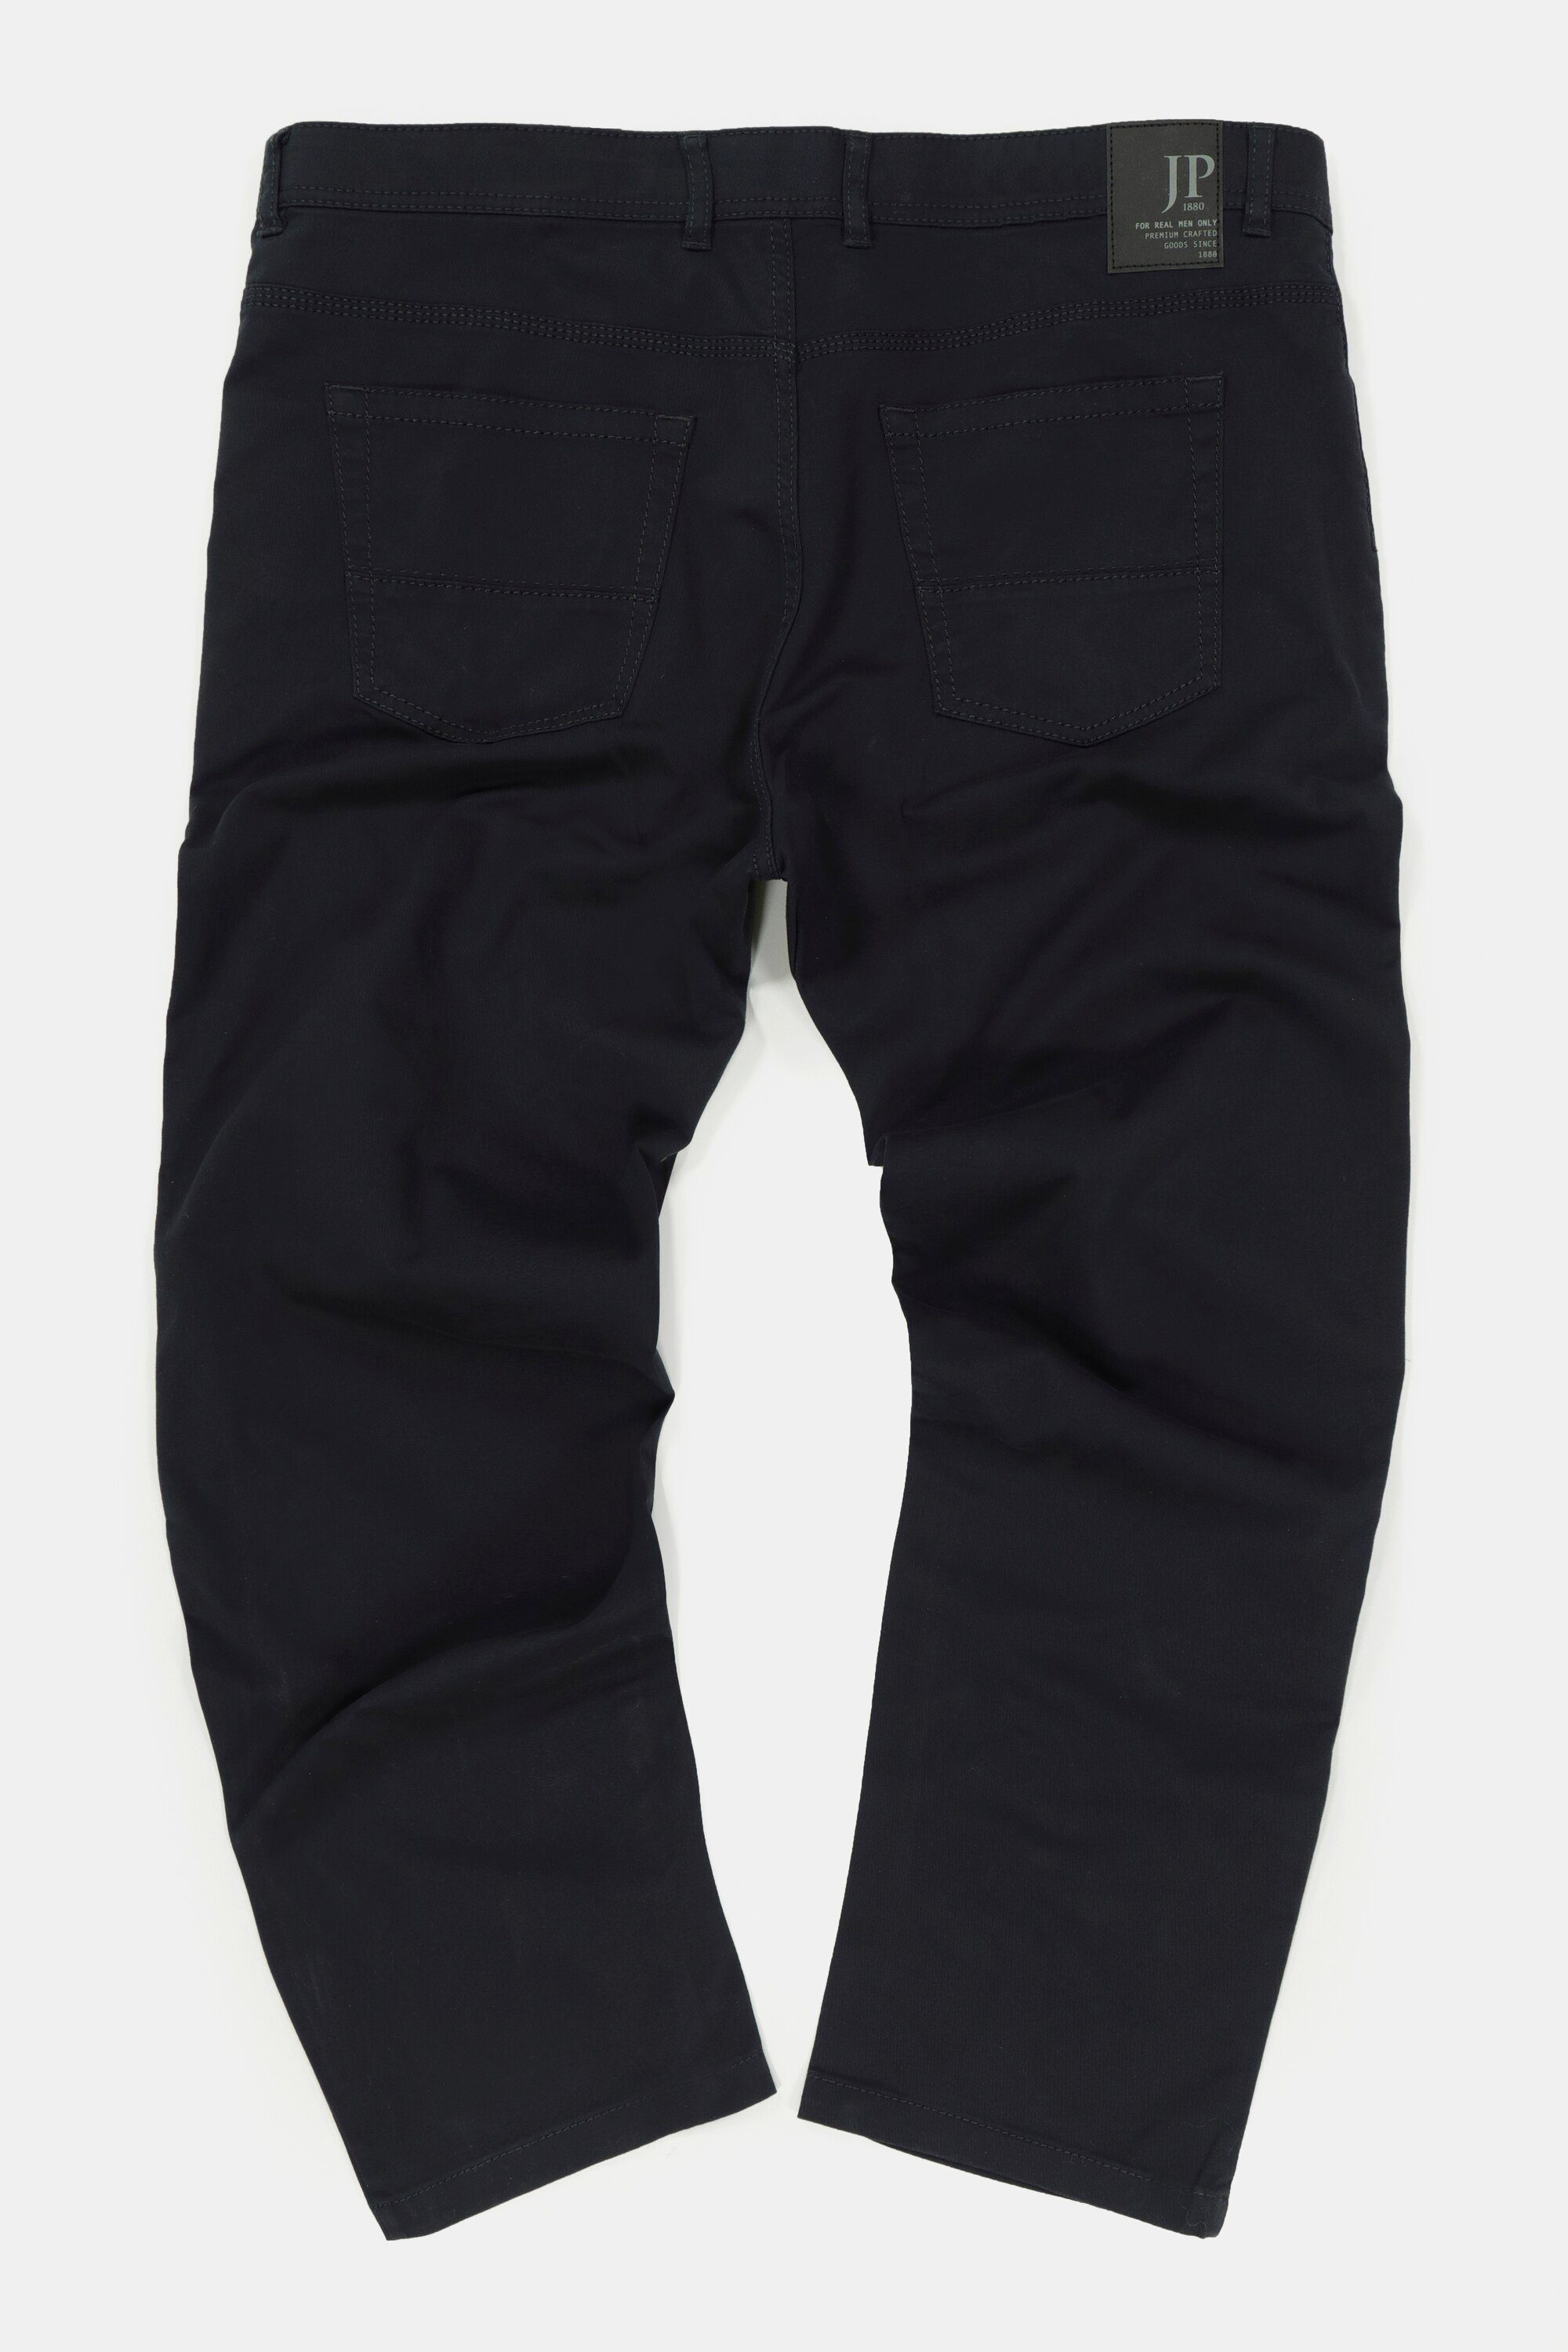 marine JP1880 Fit elastischer Regular dunkel 5-Pocket-Jeans Bund 5-Pocket Hose